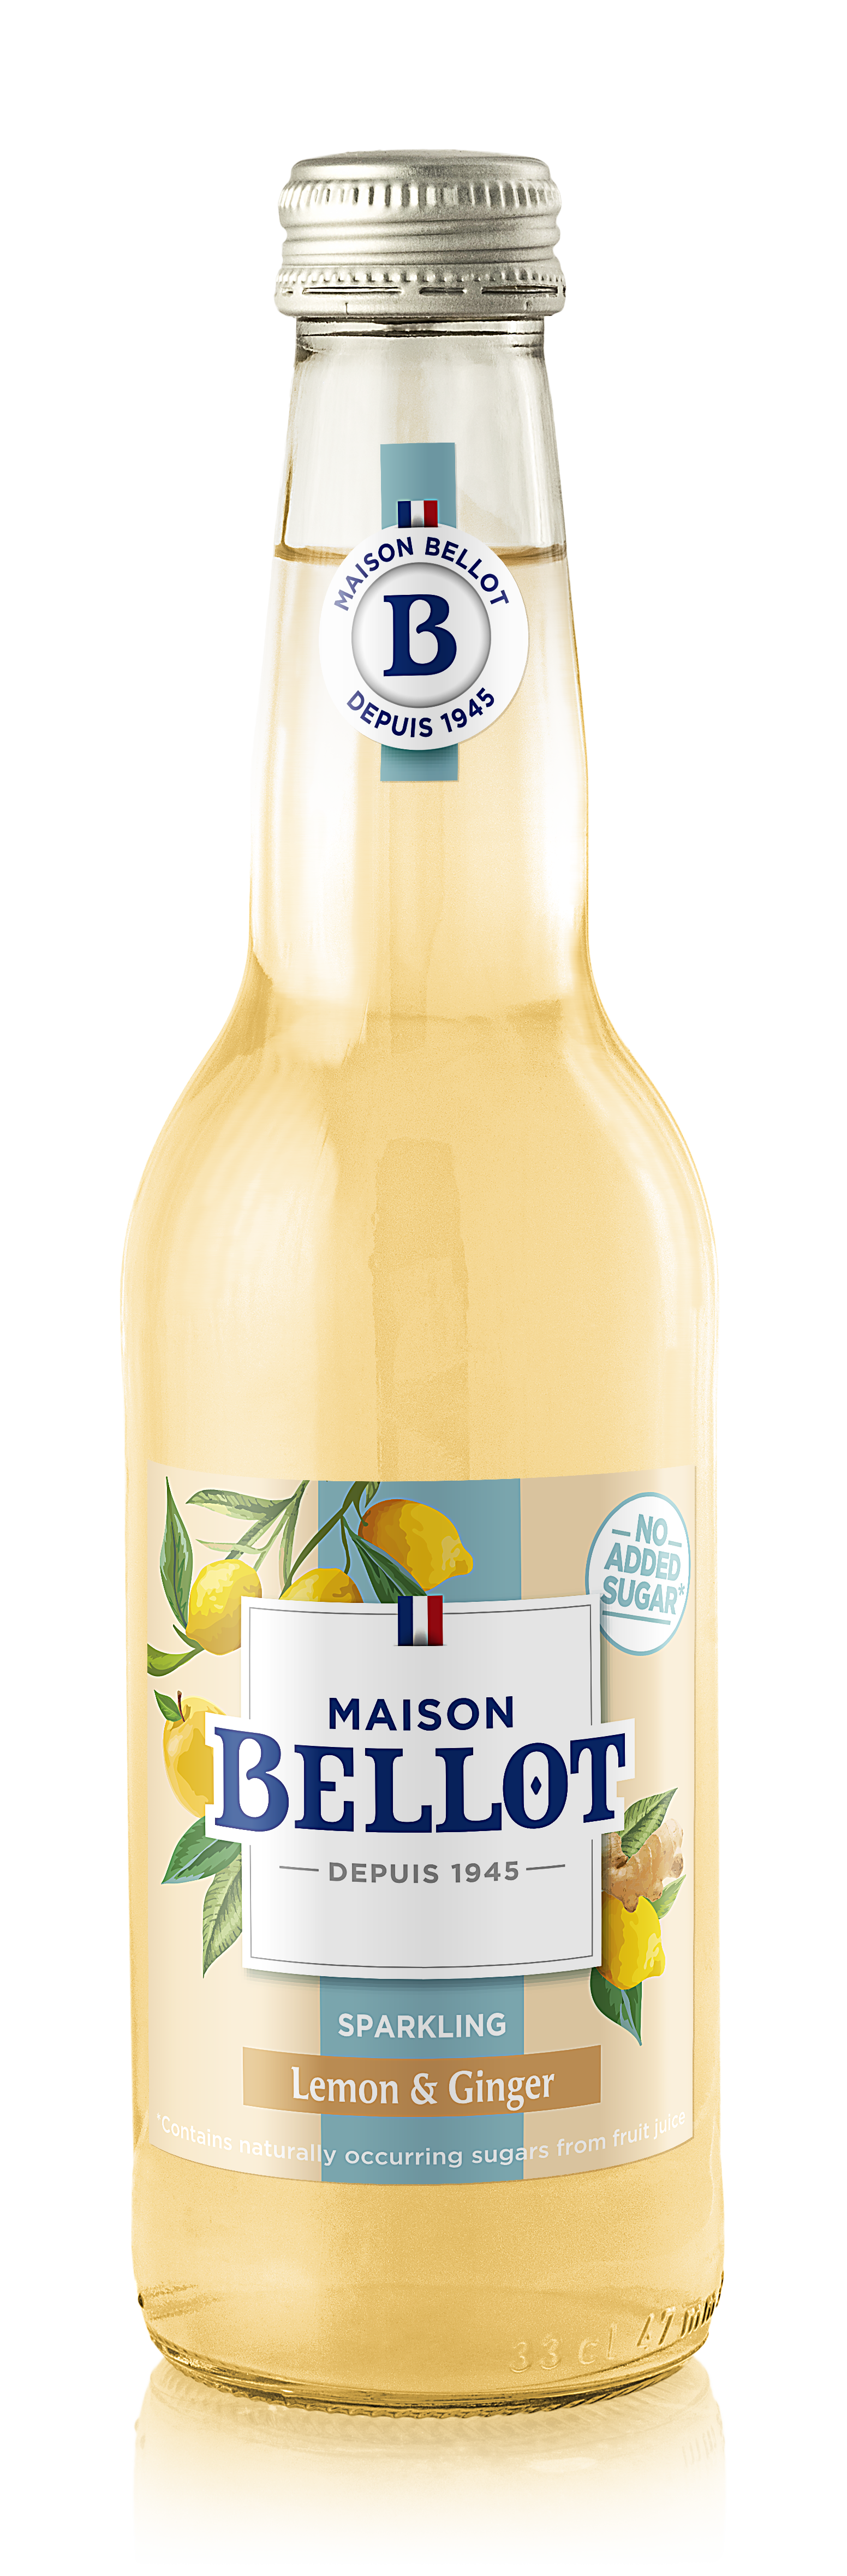 Bellot Citron/Gingembre Premium Limonade 24x33CL BV